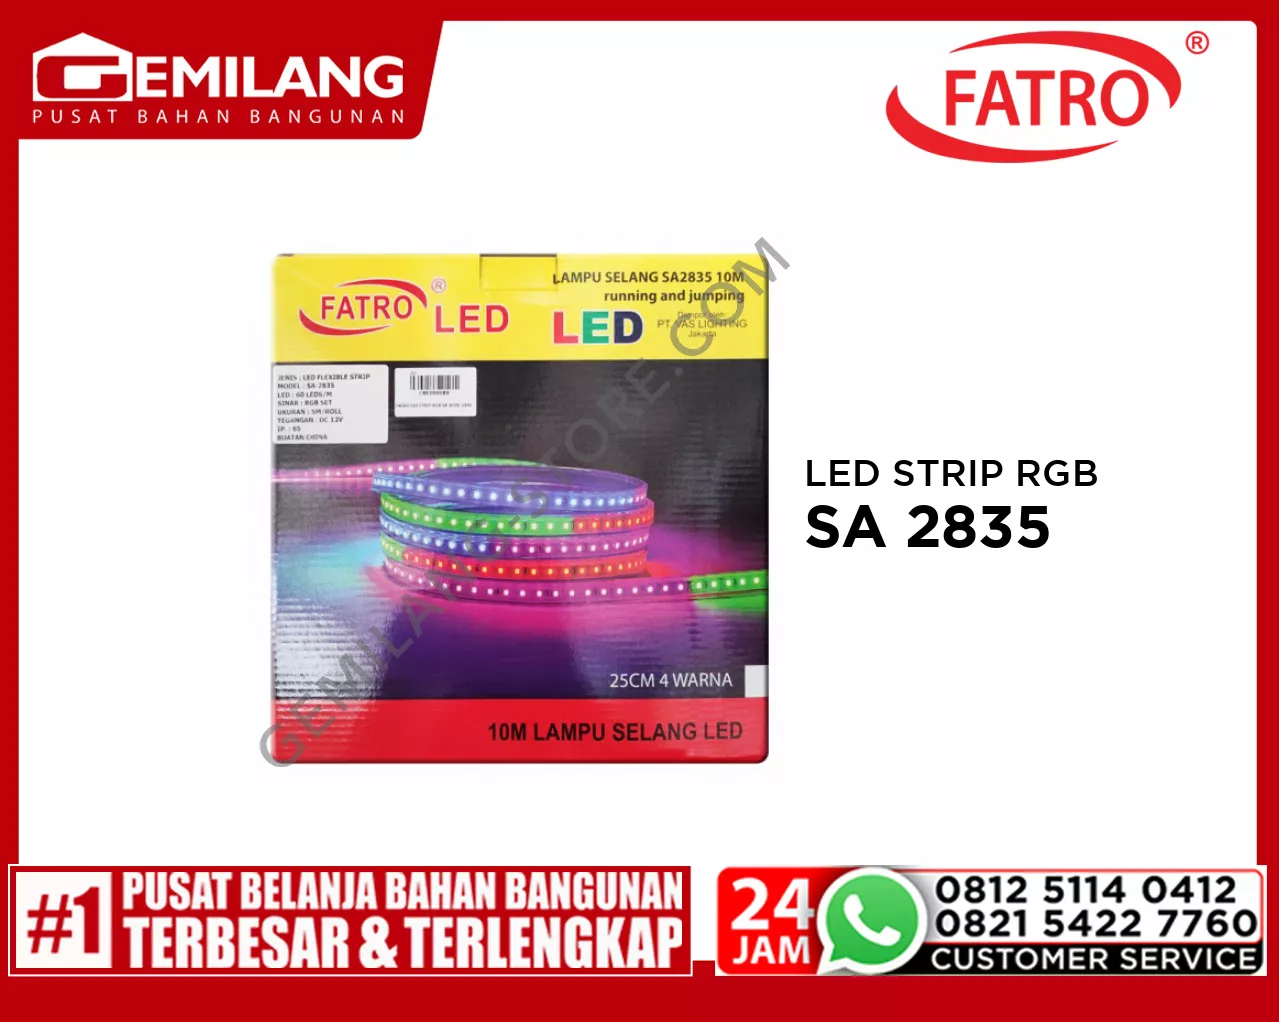 FATRO LED STRIP RGB SA 2835/220v